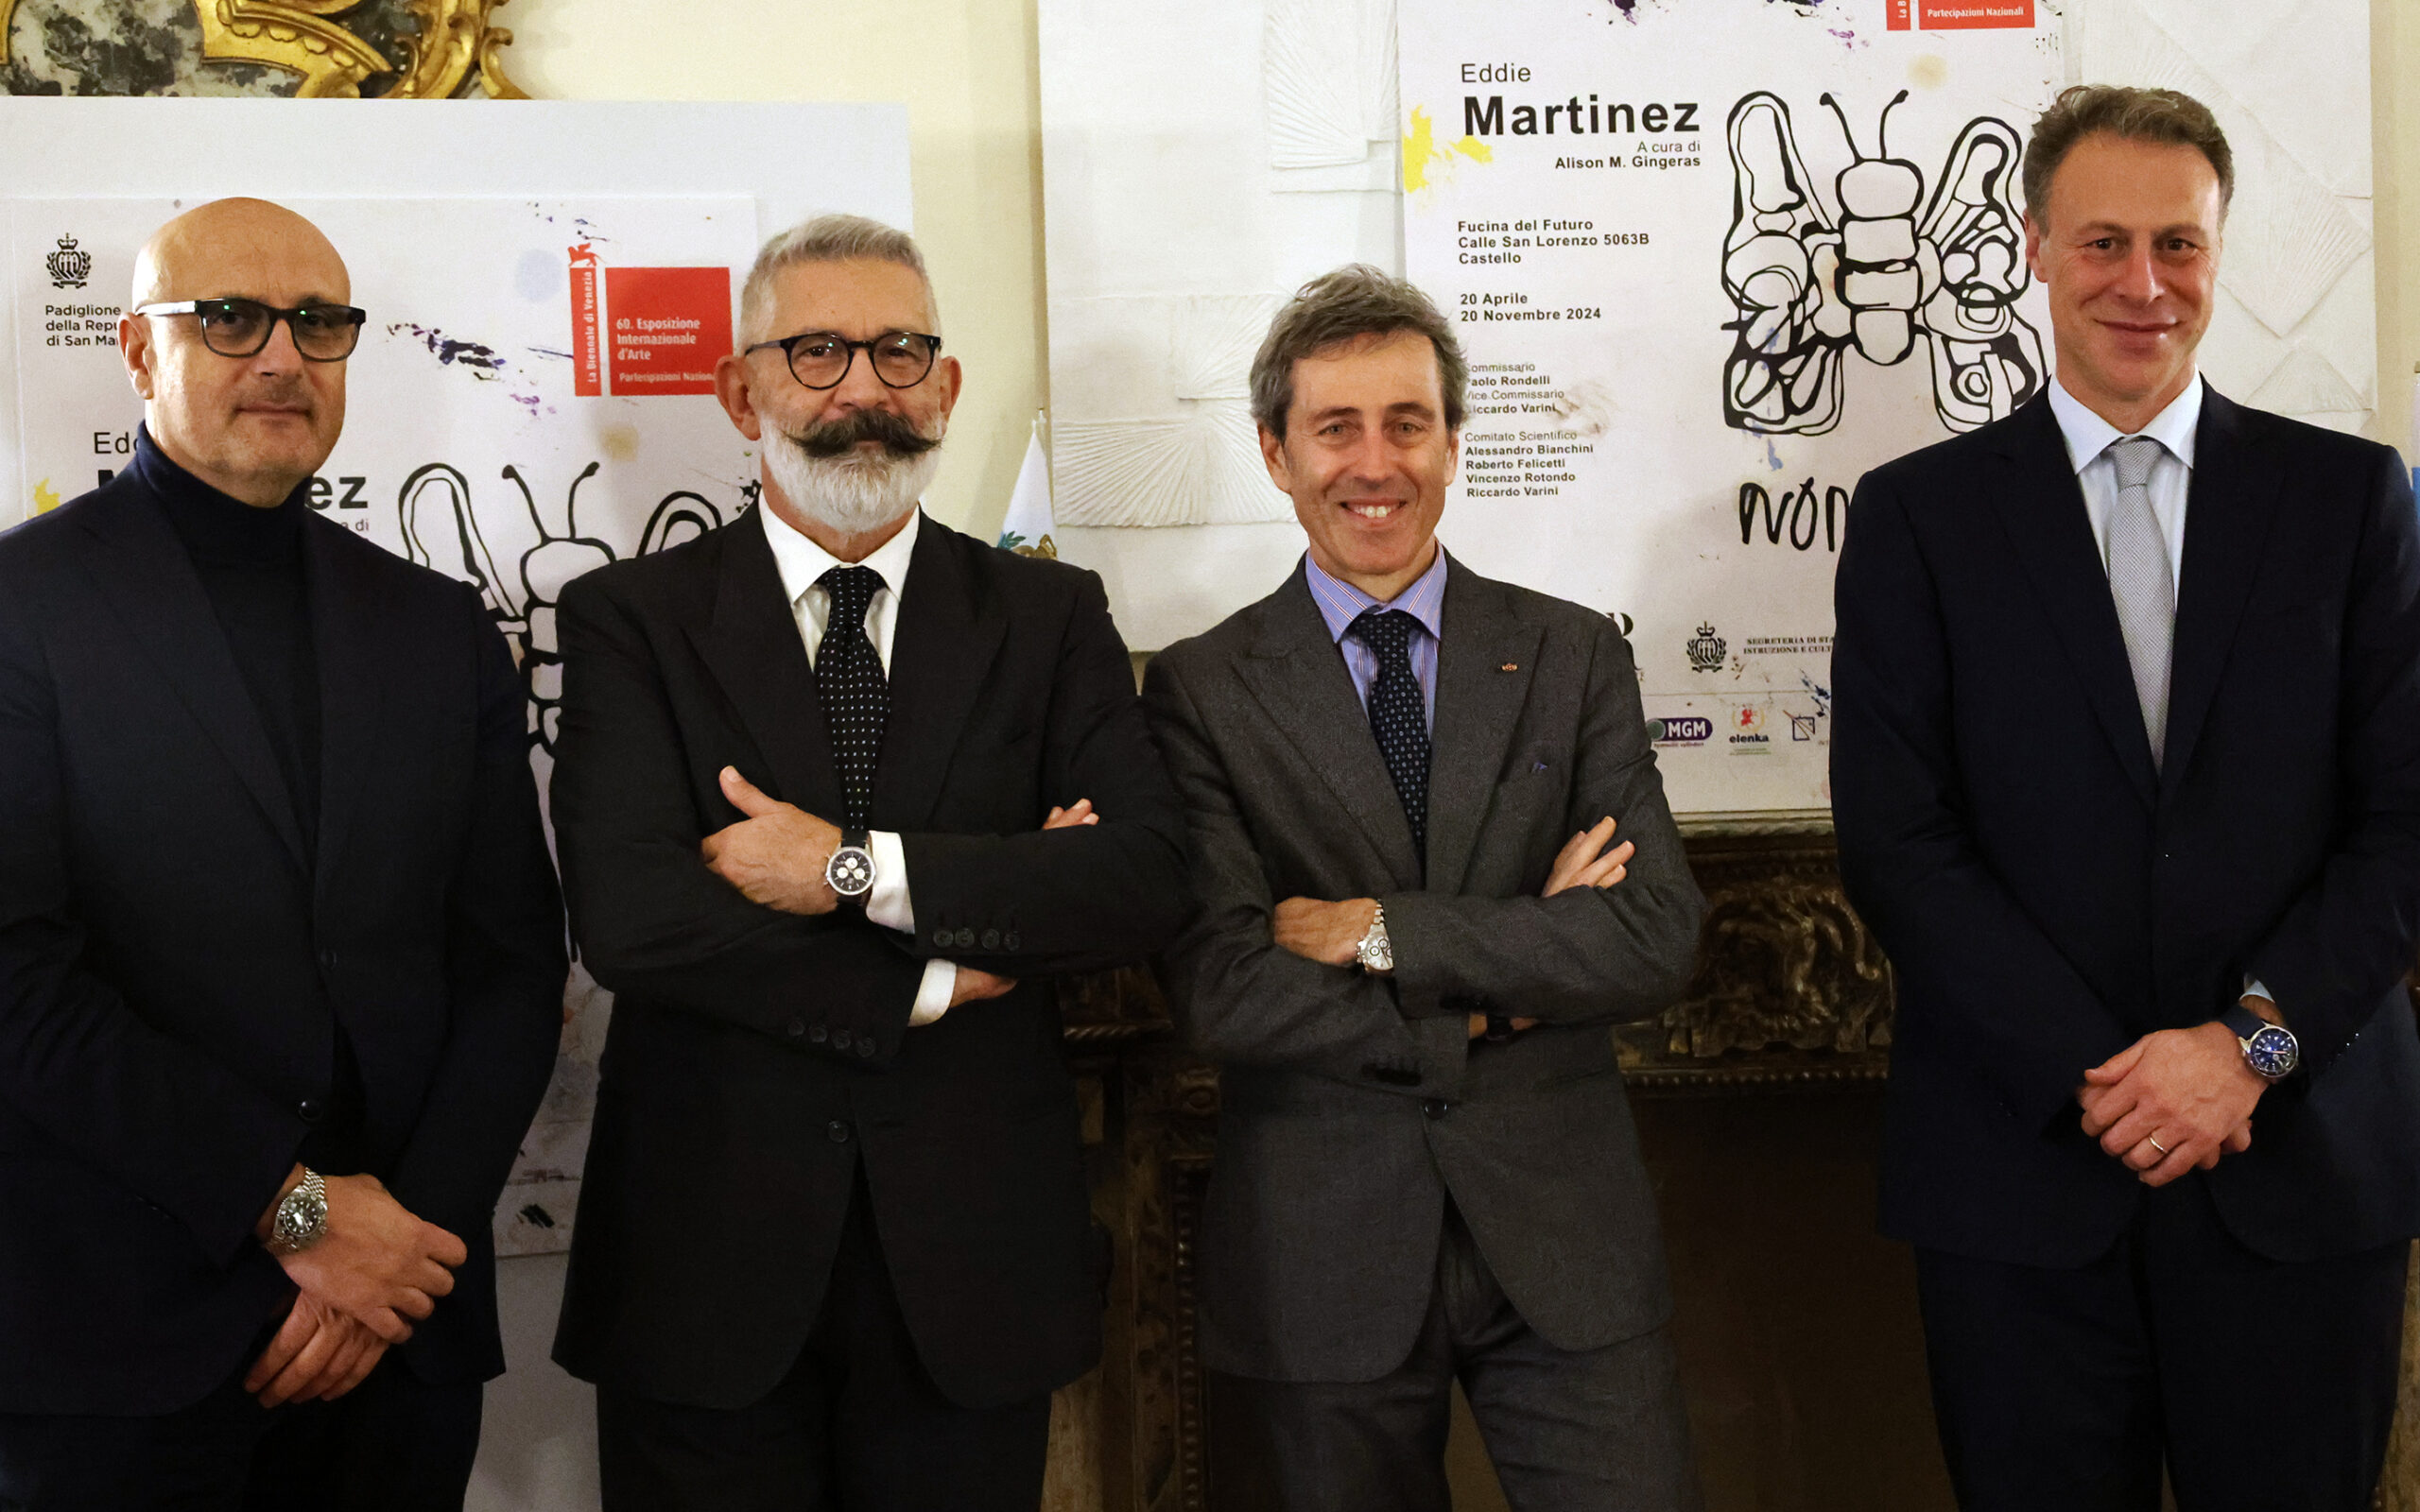 San Marino con “Nomander” approda alla Biennale di Venezia